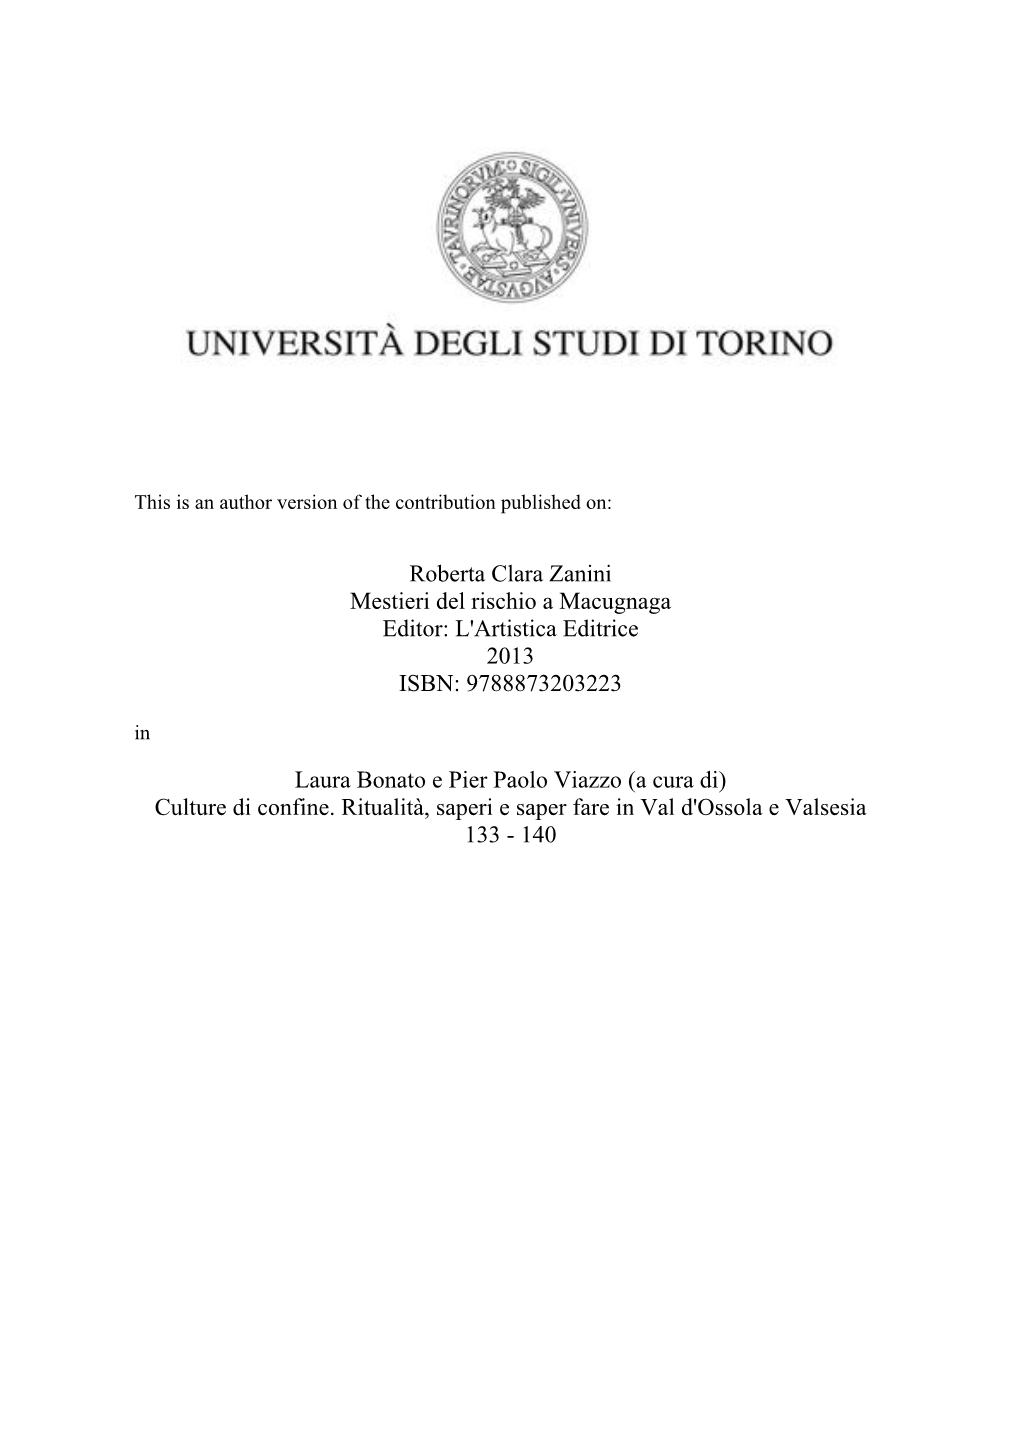 Roberta Clara Zanini Mestieri Del Rischio a Macugnaga Editor: L'artistica Editrice 2013 ISBN: 9788873203223 In